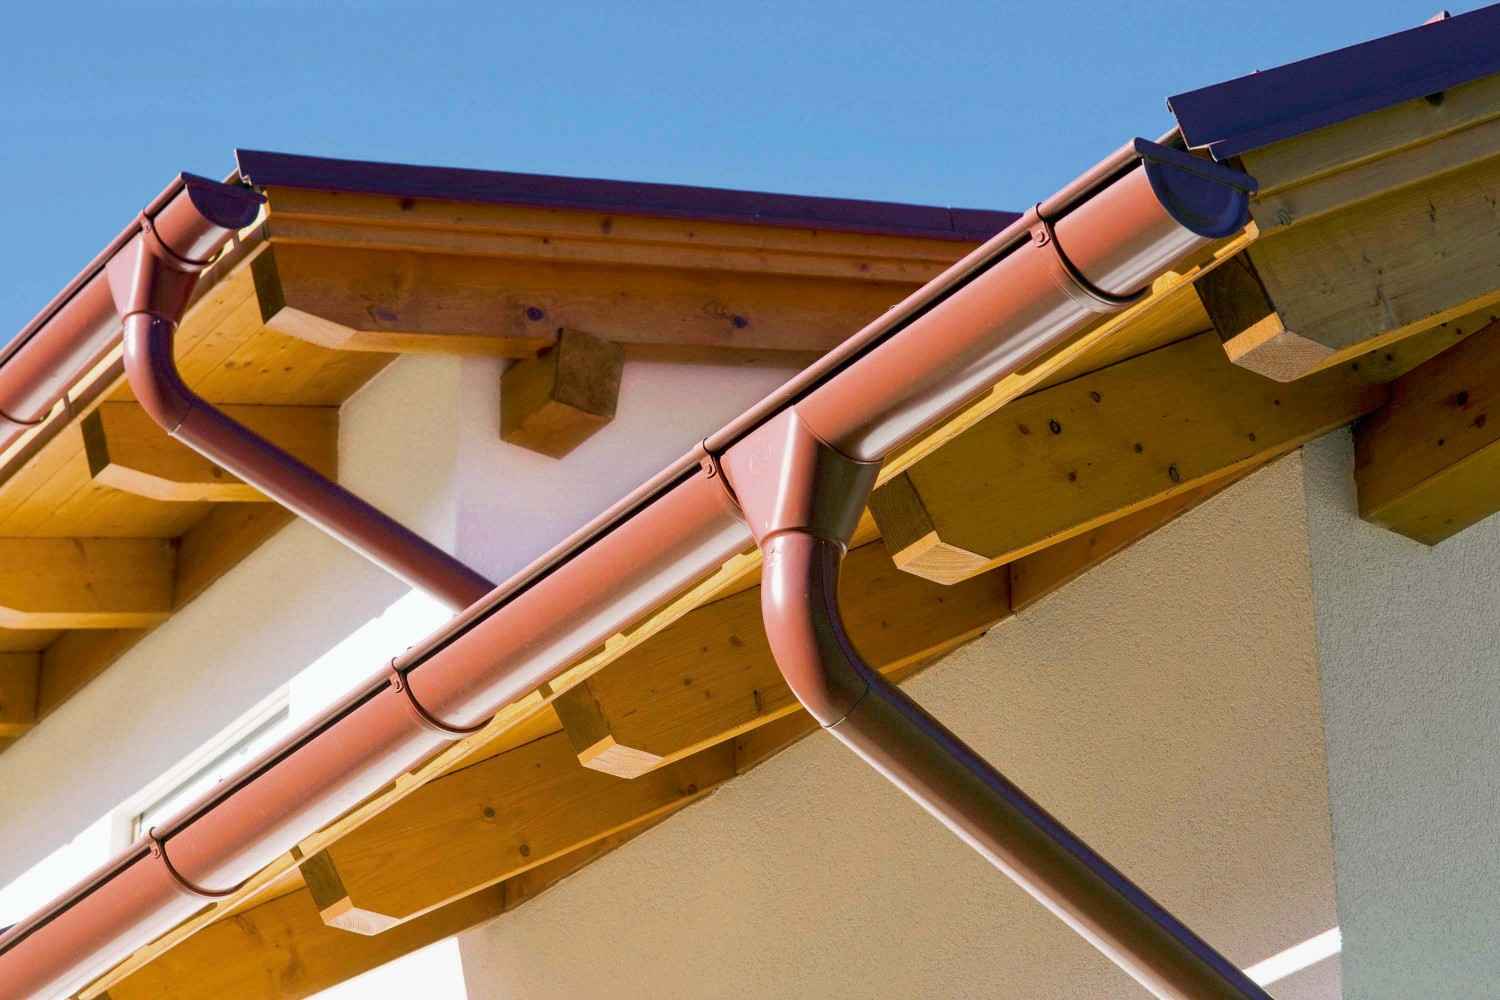 Rund ums Haus Hochwertige Systeme zur Dachentwässerung von PREFA vermeiden Feuchtigkeitsschäden - News, Bild 1